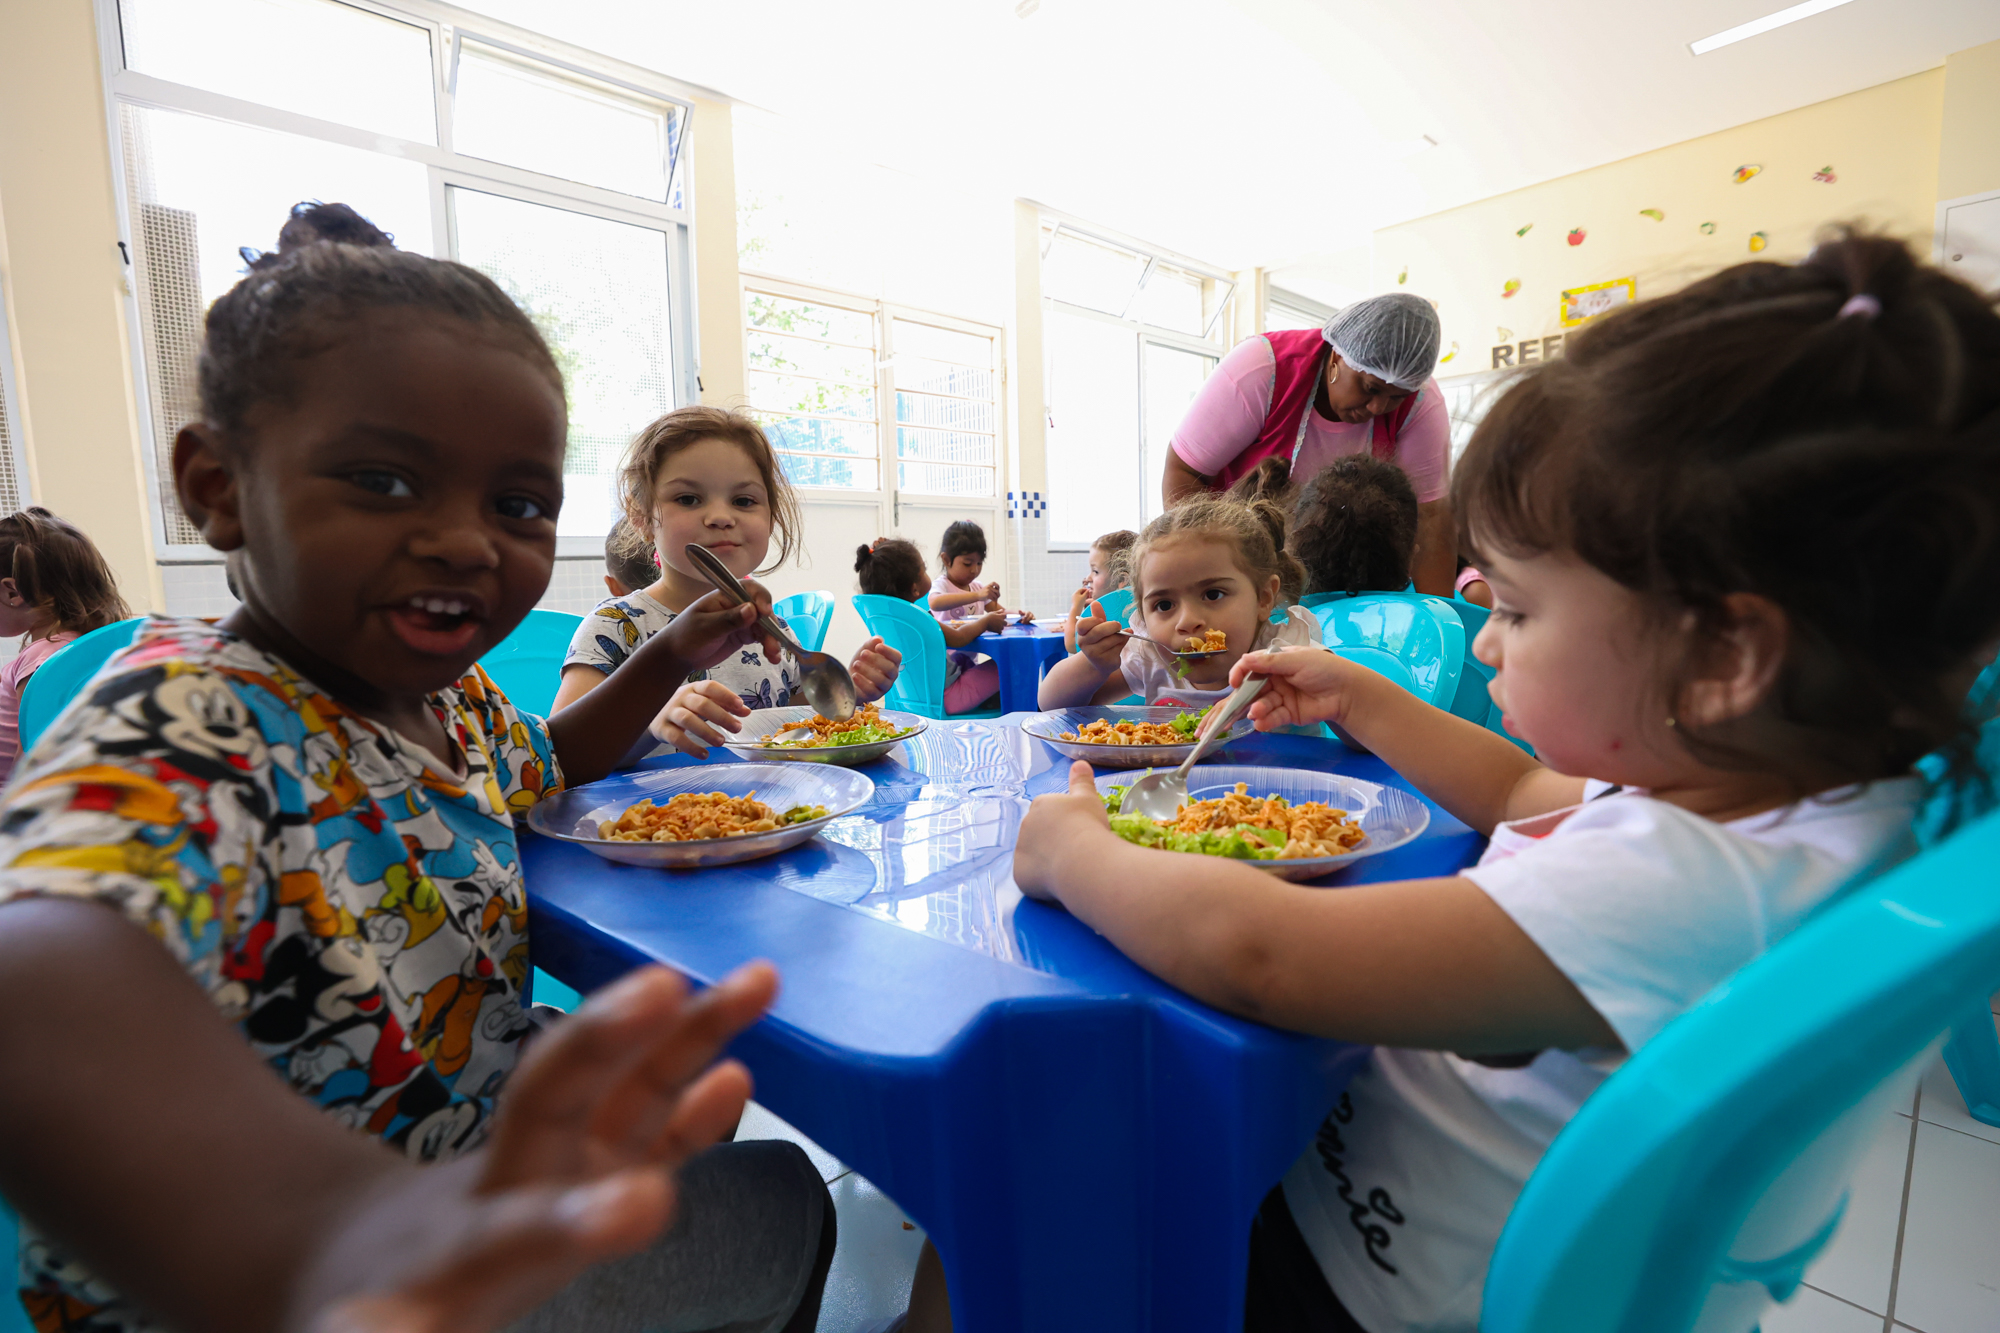 Fotografia de crianças pequenas se alimentando sentadas a mesa.